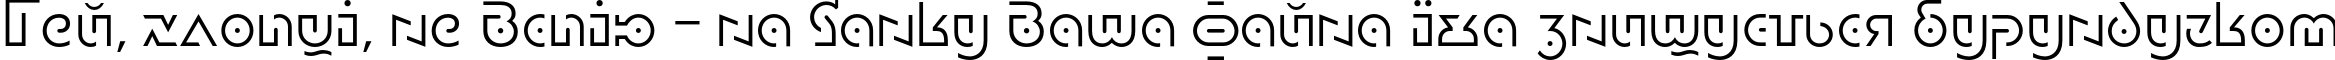 Пример написания шрифтом DublonLight текста на украинском